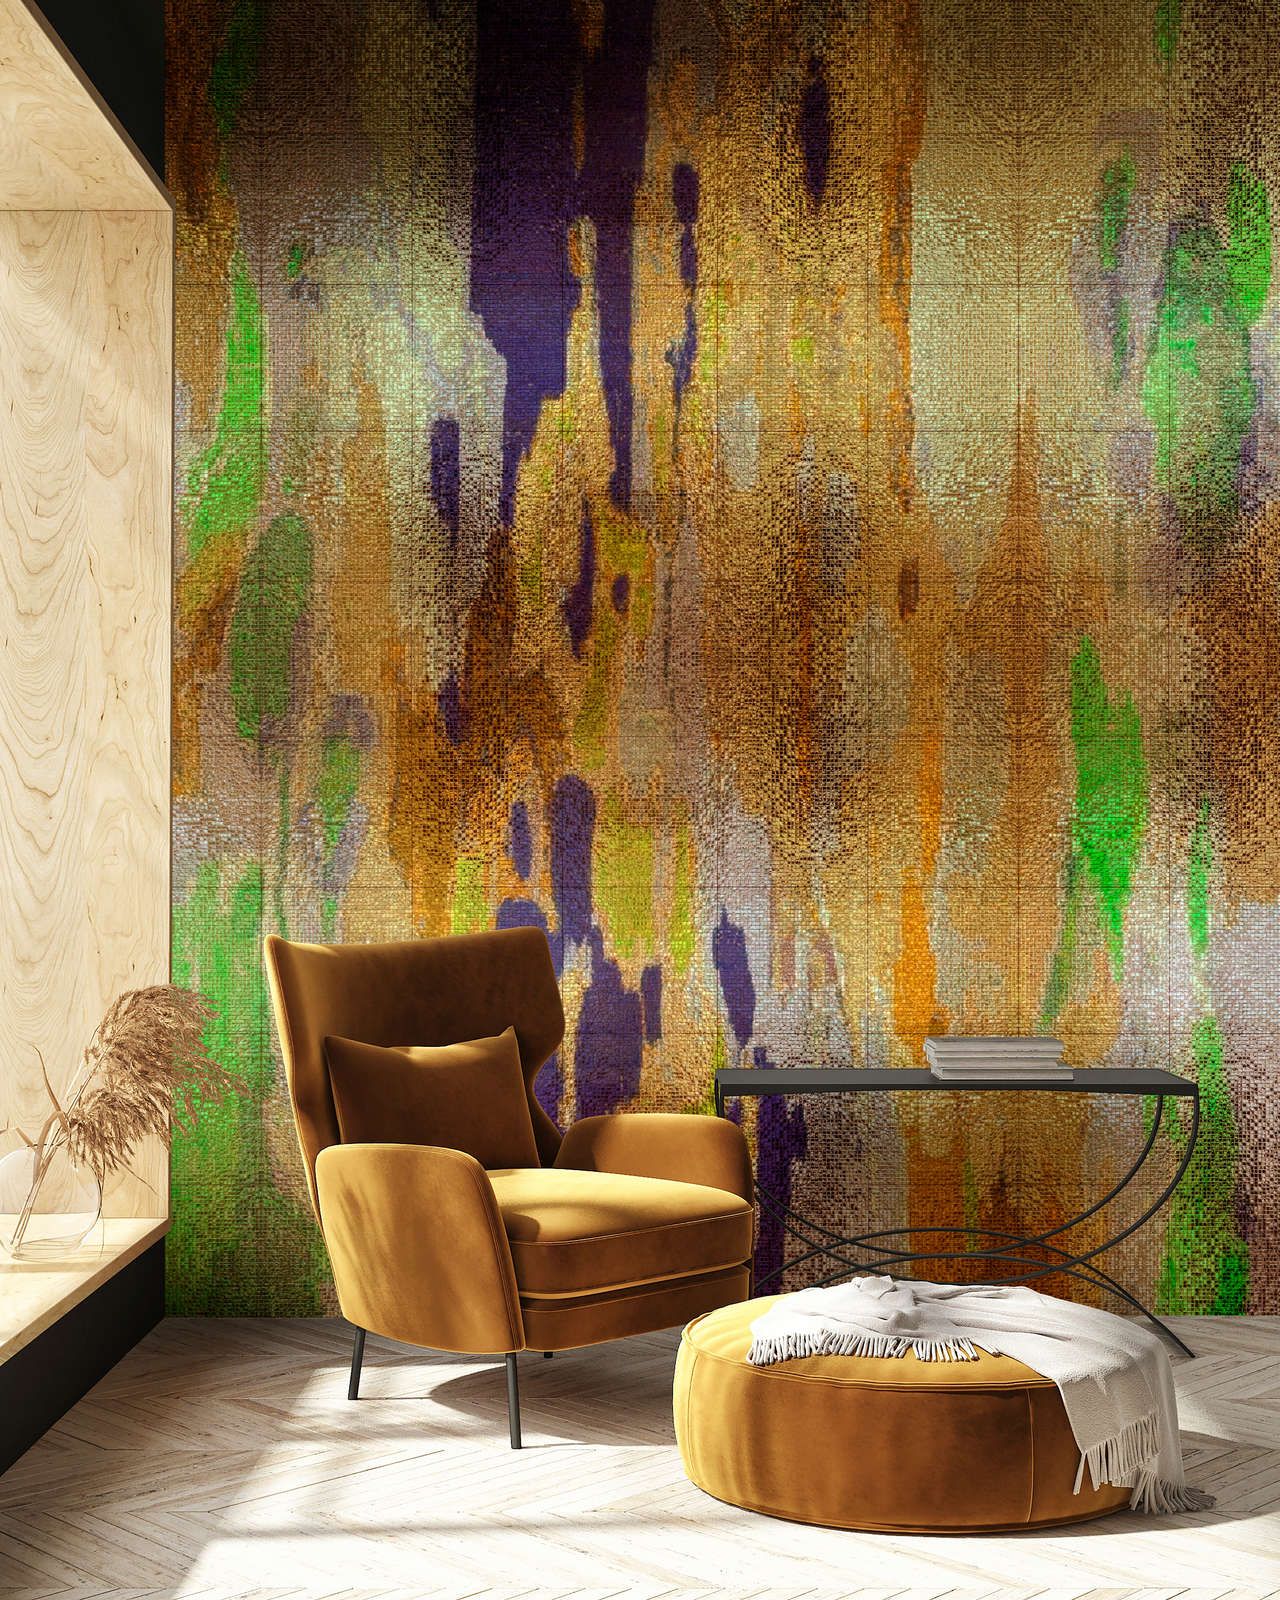             Fotomural »marielle 1«< - Degradados de color morado, dorado, verde con estructura de mosaico - Tela no tejida ligeramente texturada
        